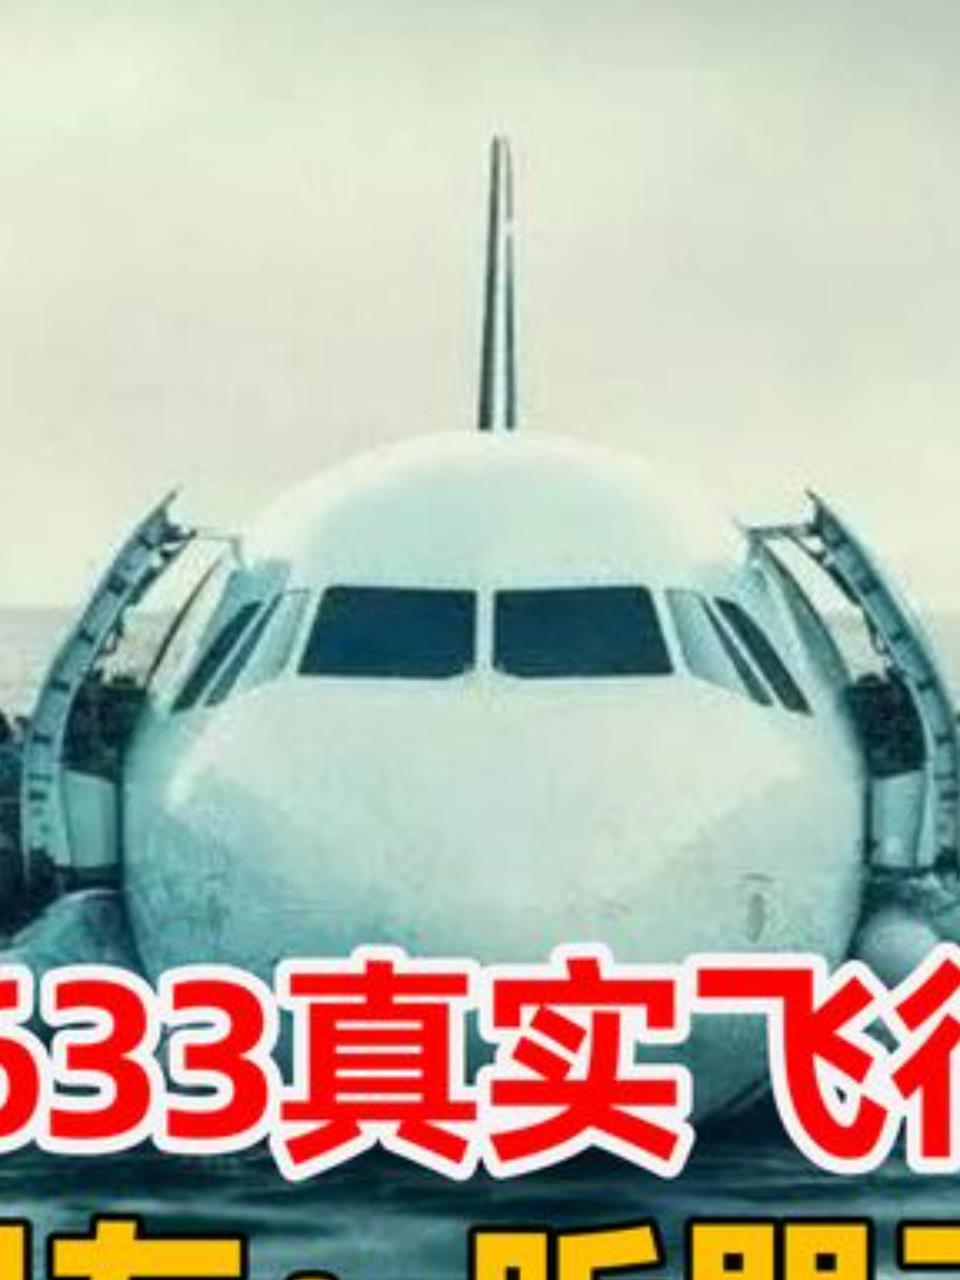 四川航空8633怎么画图片